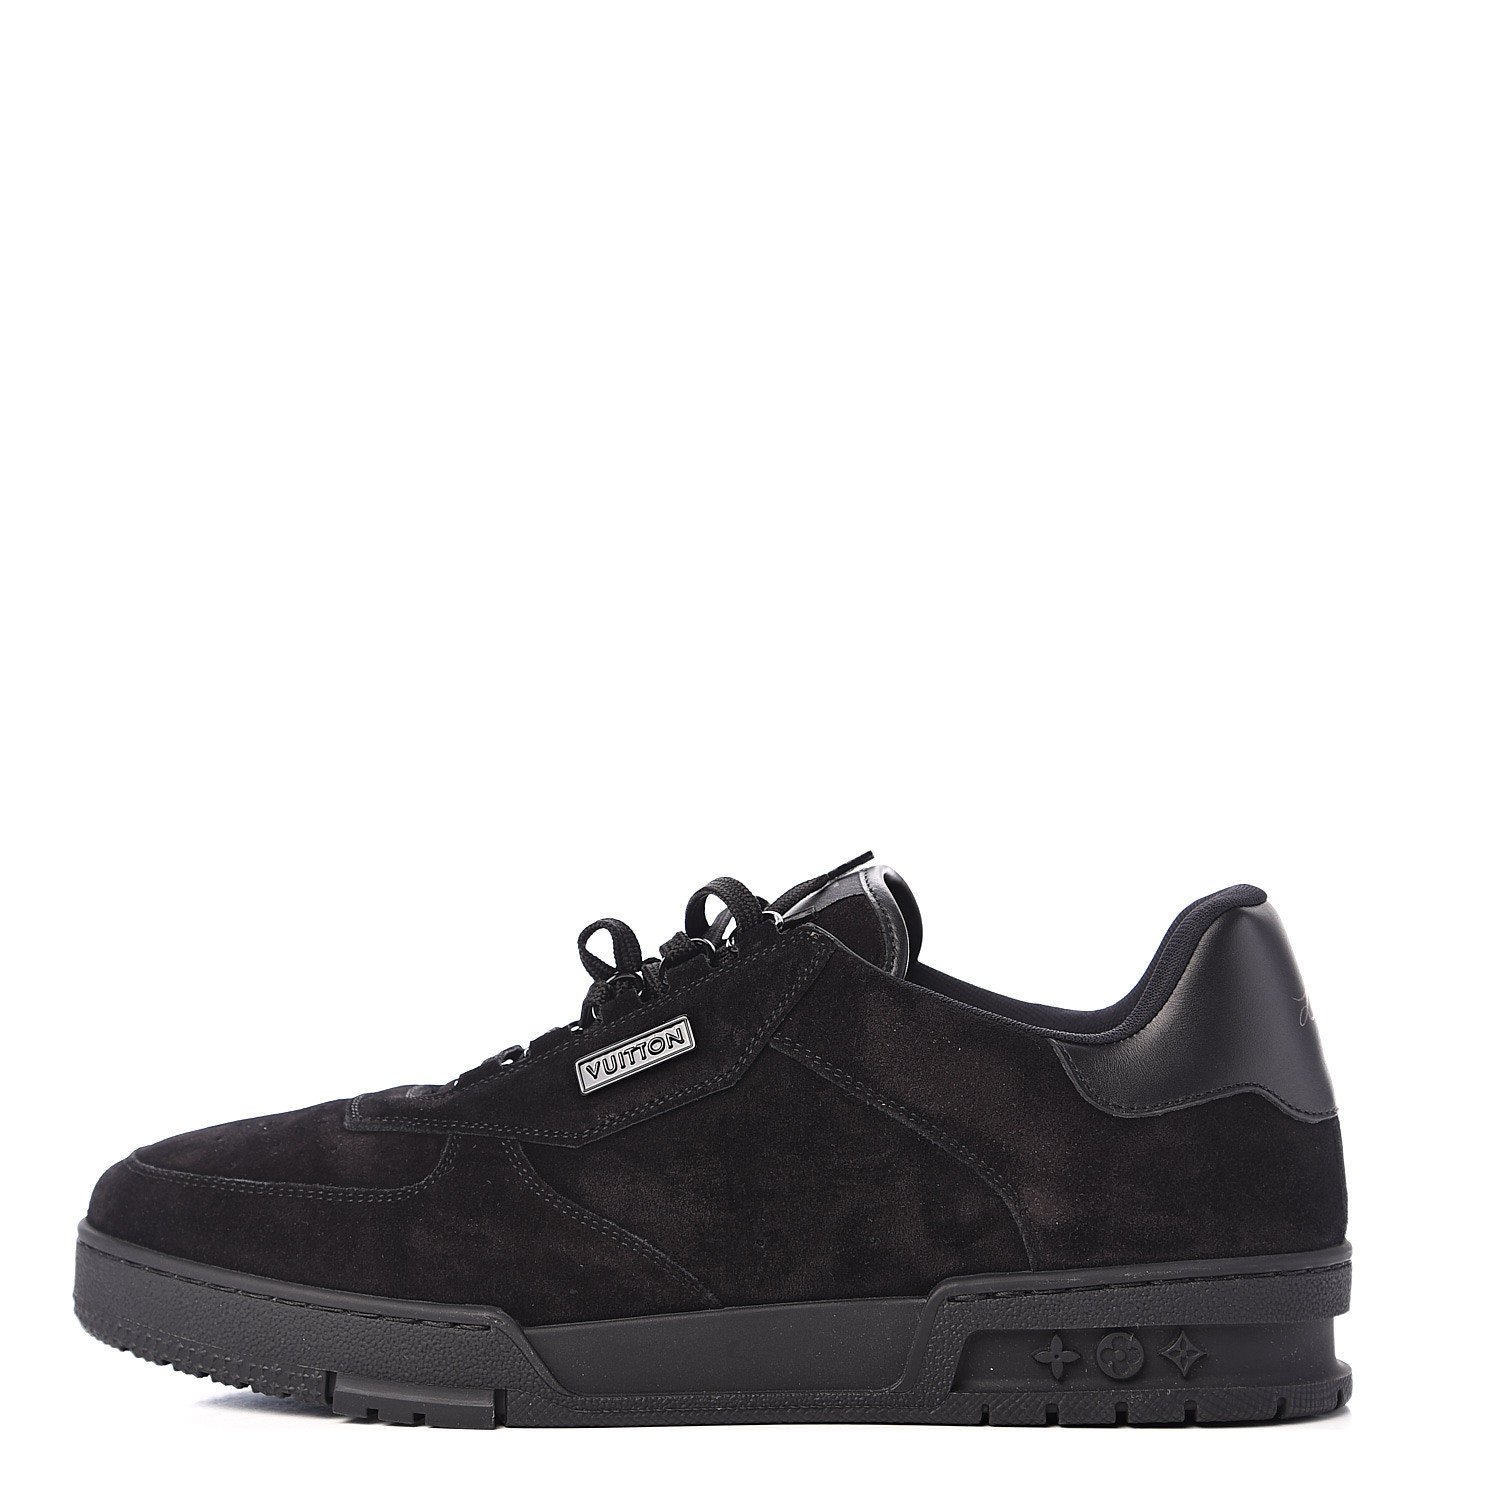 LOUIS VUITTON Suede Uniform Sneakers 9.5 Black 540870 | FASHIONPHILE